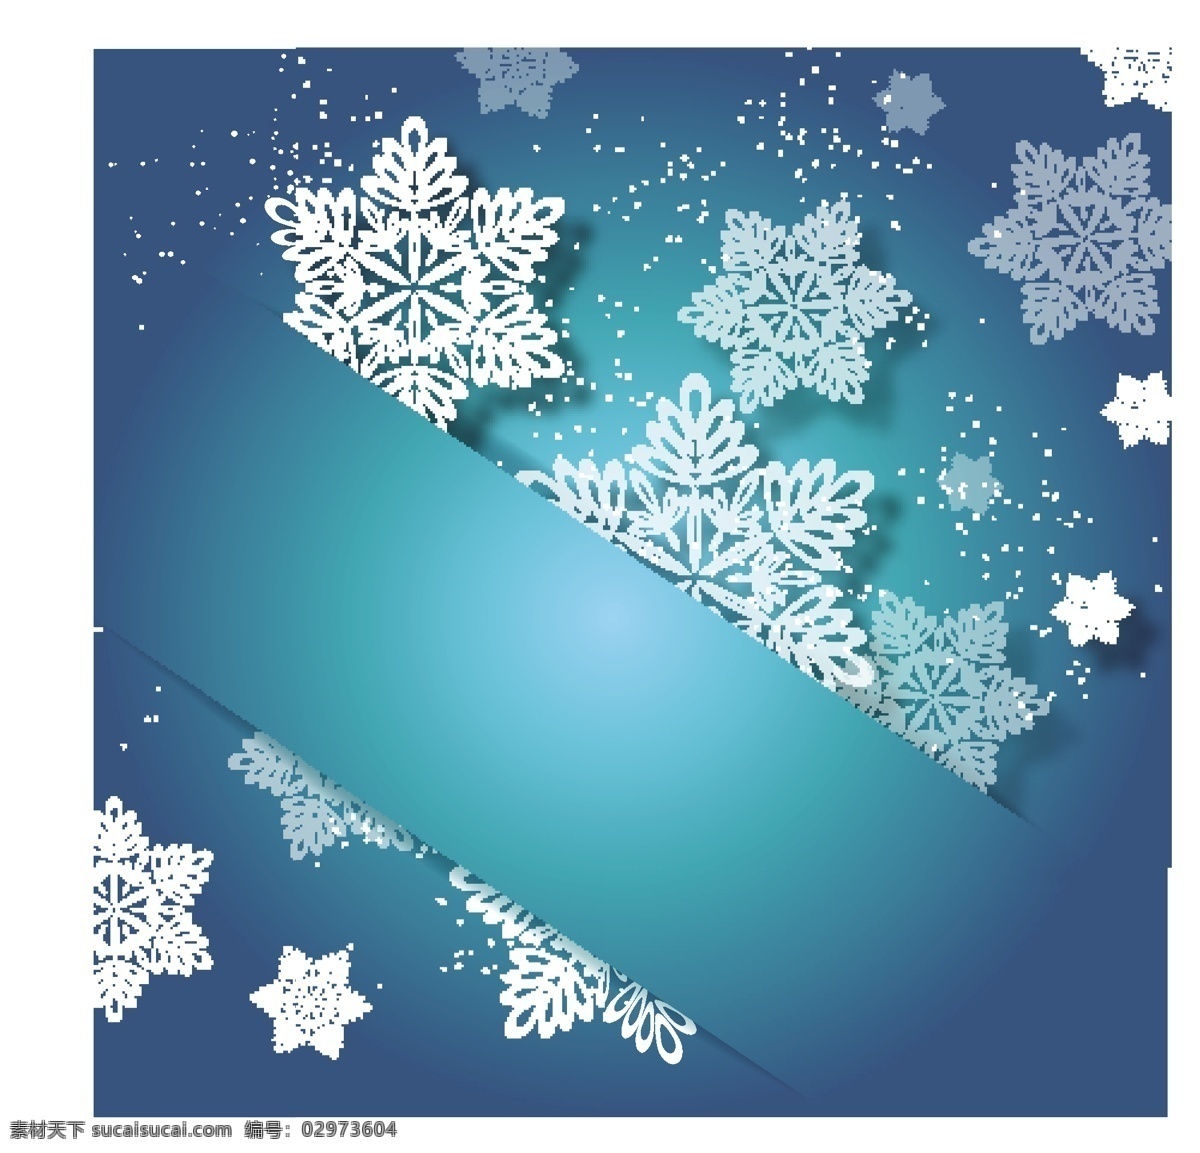 贴 上 绿松石 圣诞 邀请 snowflake 背景壁纸 旗帜和徽章 庆典和聚会 圣诞节 节日和季节 矢量艺术 模板和模型